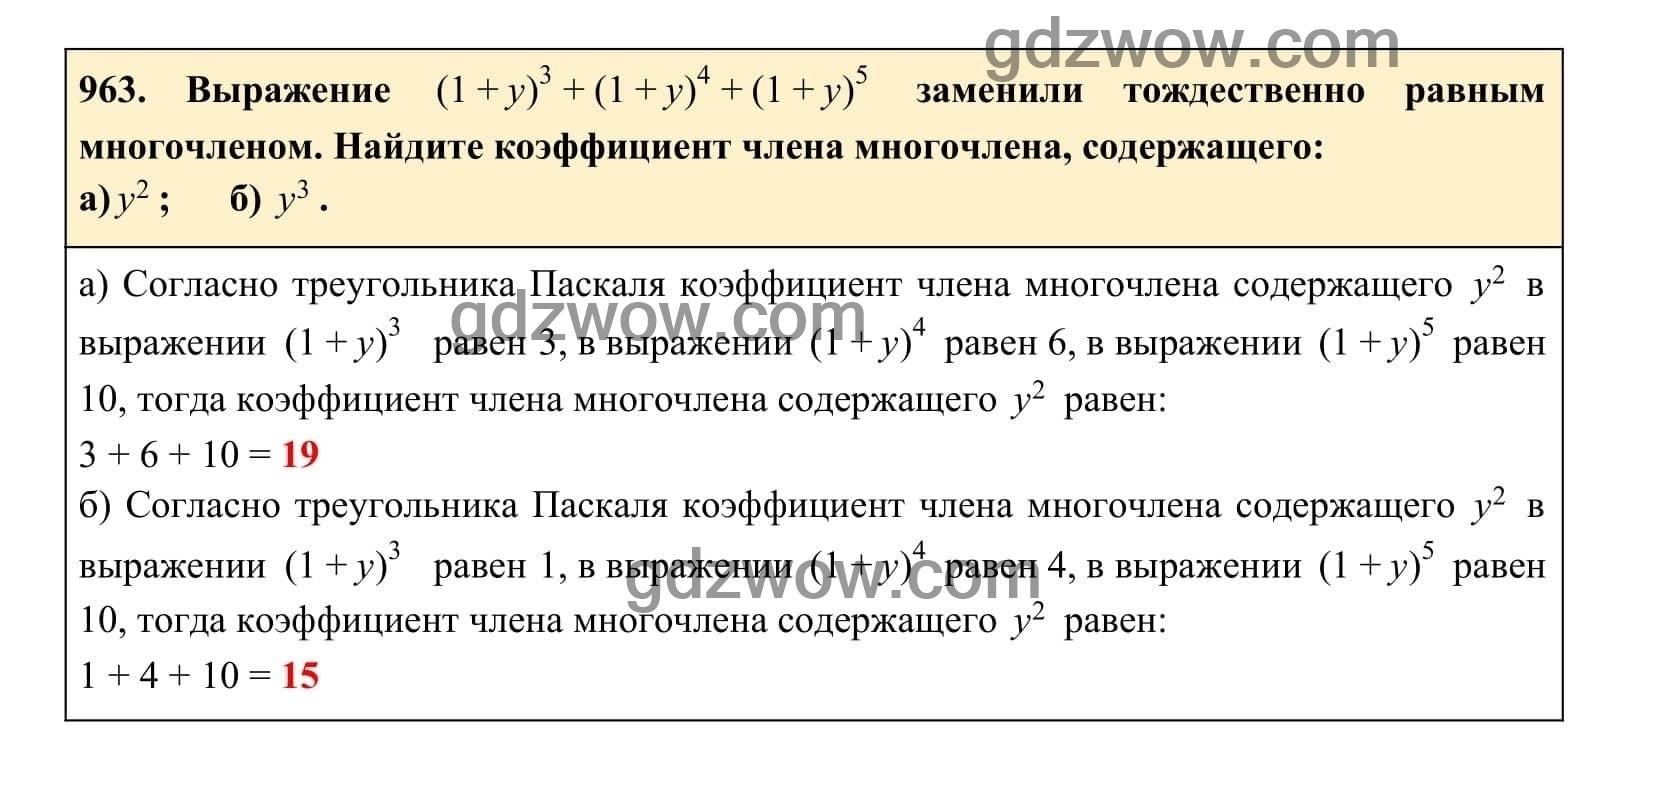 Упражнение 963 - ГДЗ по Алгебре 7 класс Учебник Макарычев (решебник) - GDZwow